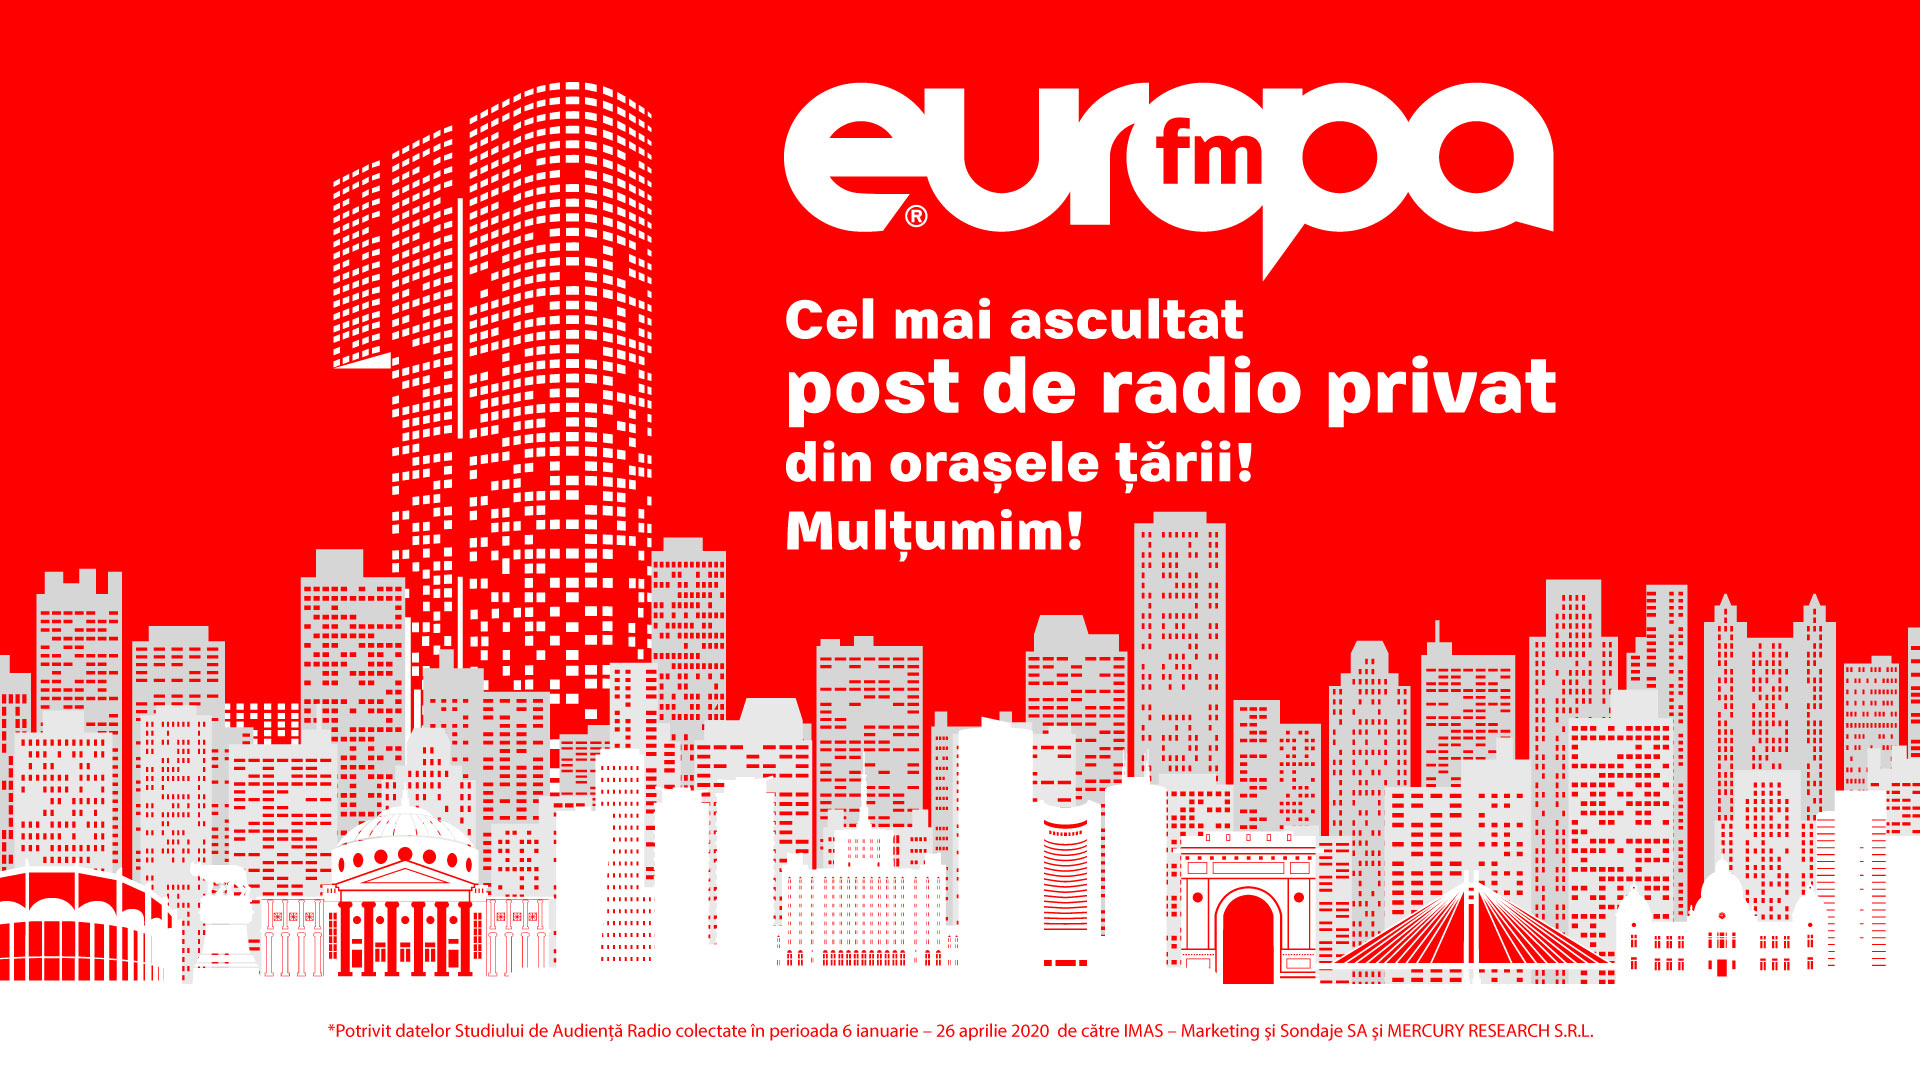 Indiferencia canta Mayo Europa FM este cel mai ascultat post de radio privat din orașele României : Europa  FM